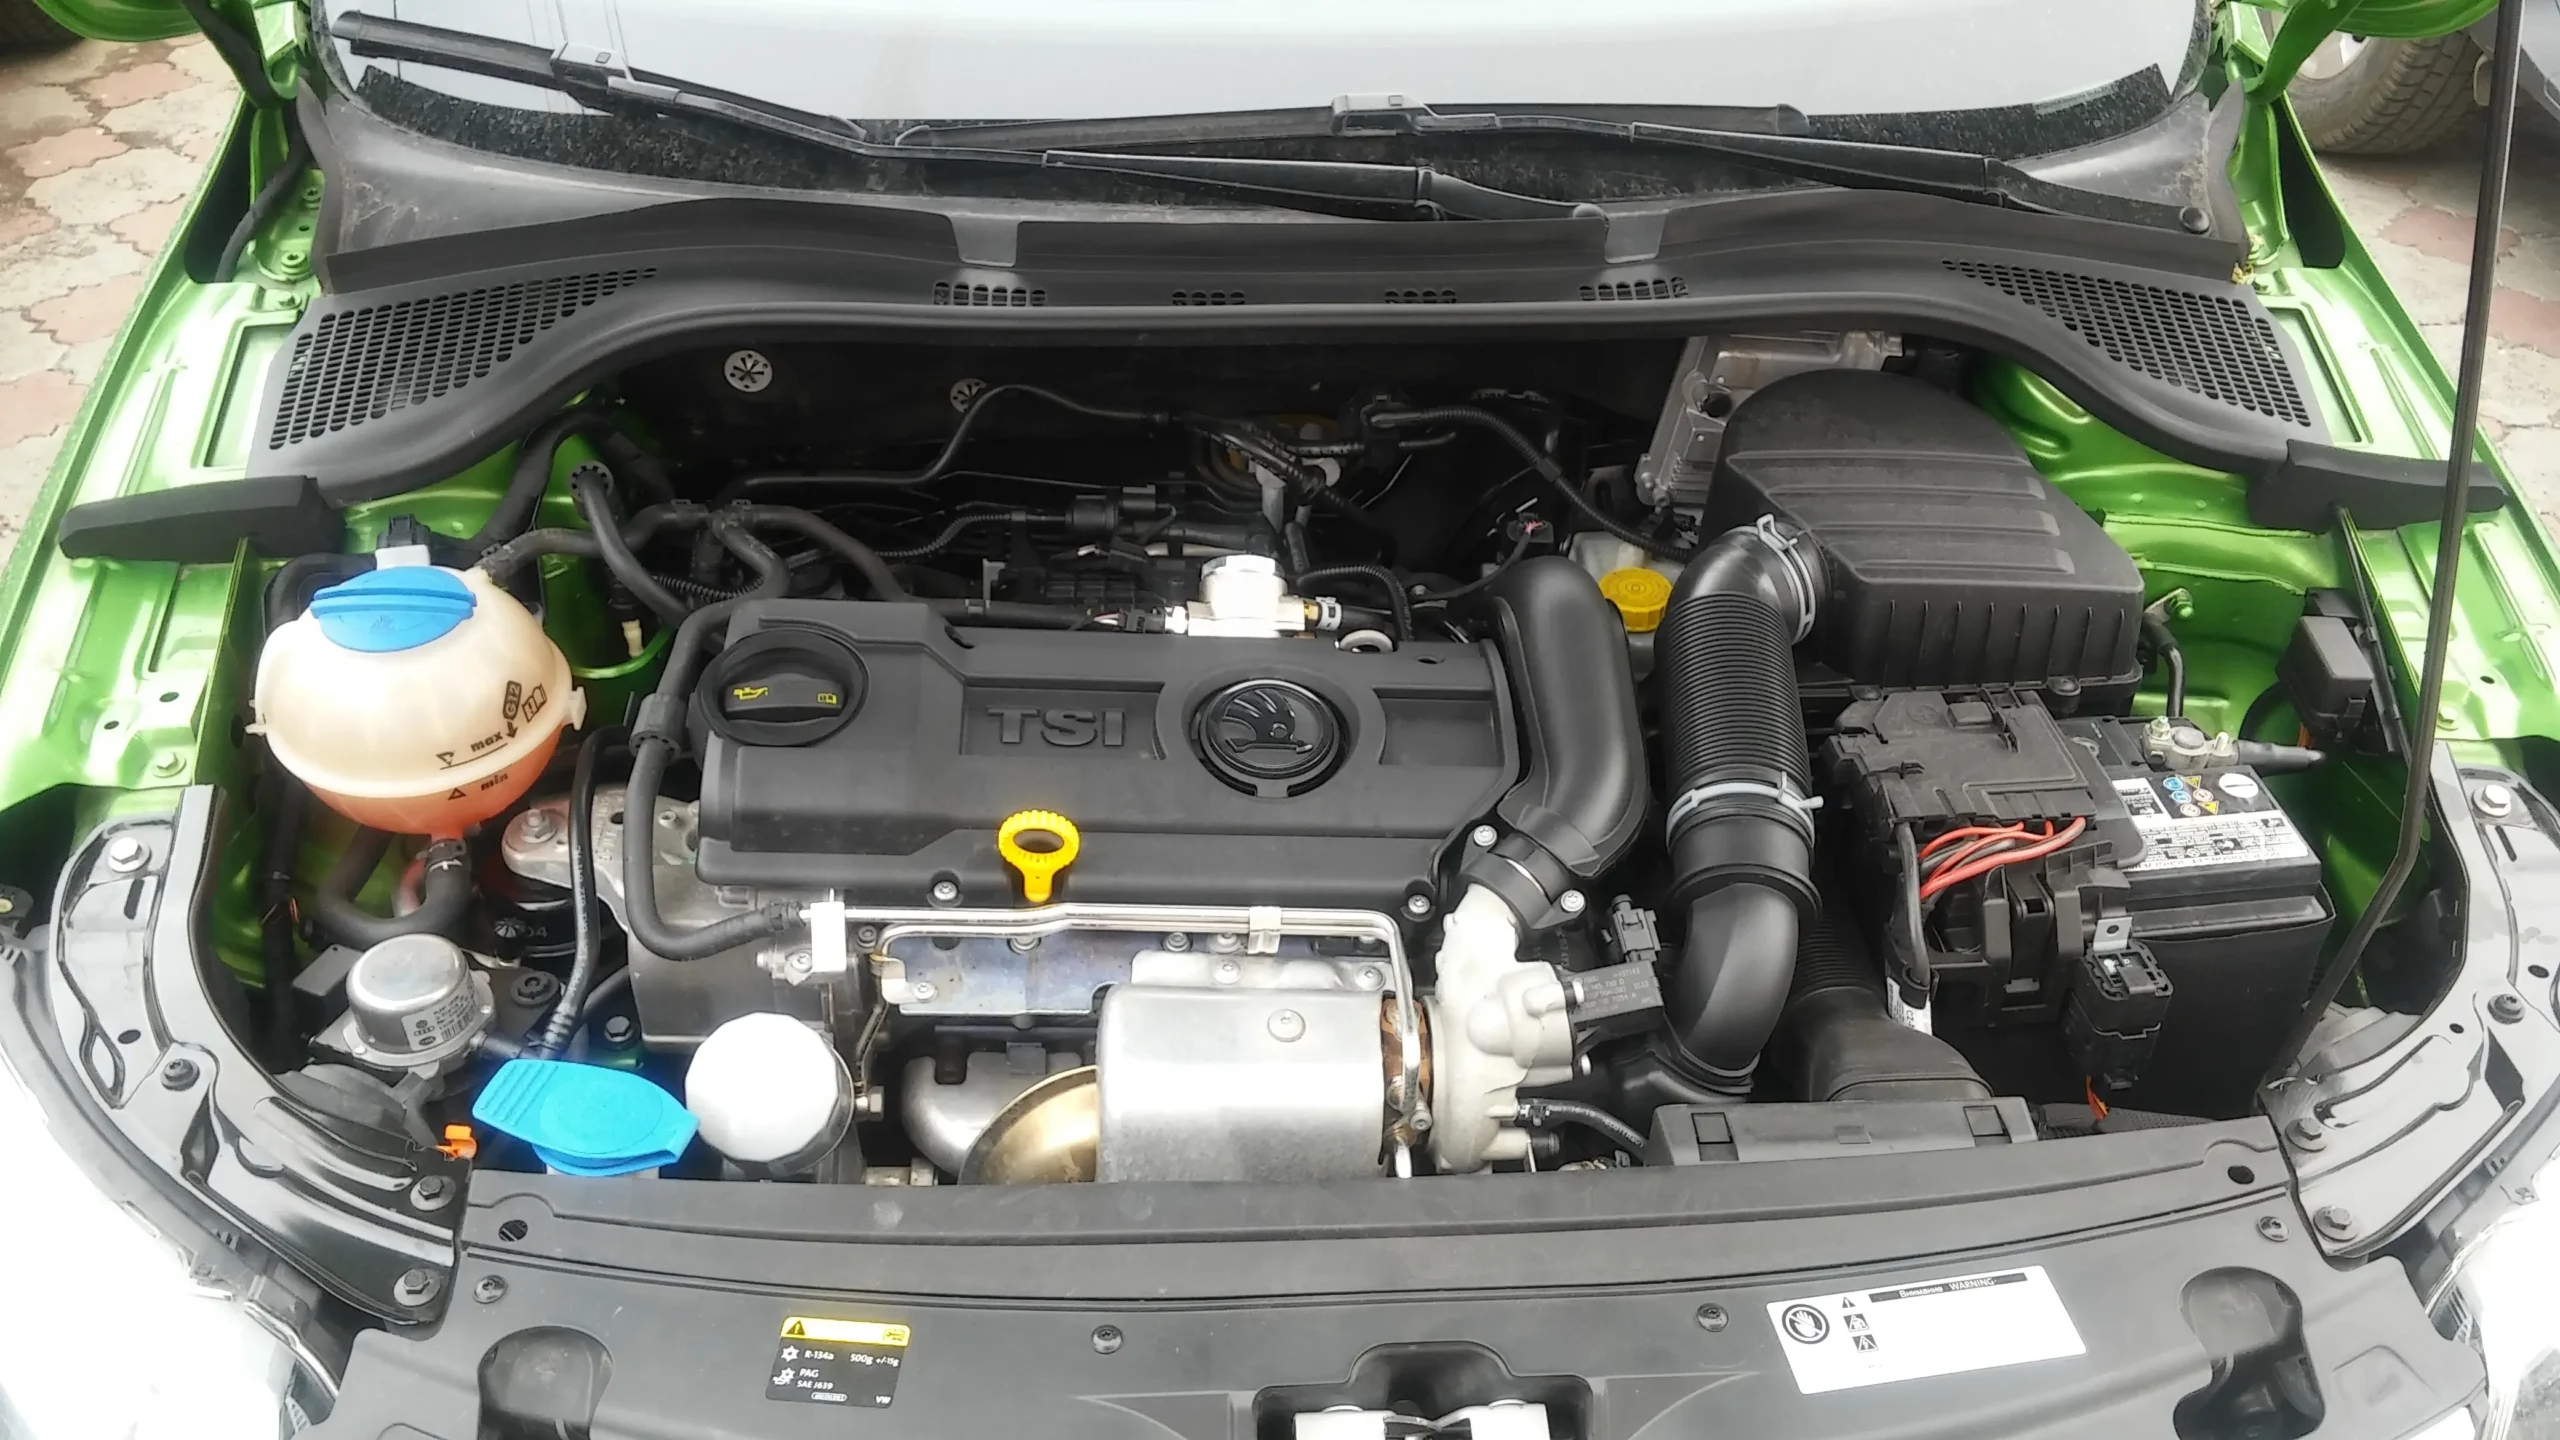 Какой двигатель в Шкоде Рапид лучше выбрать - бензиновый или дизельный?